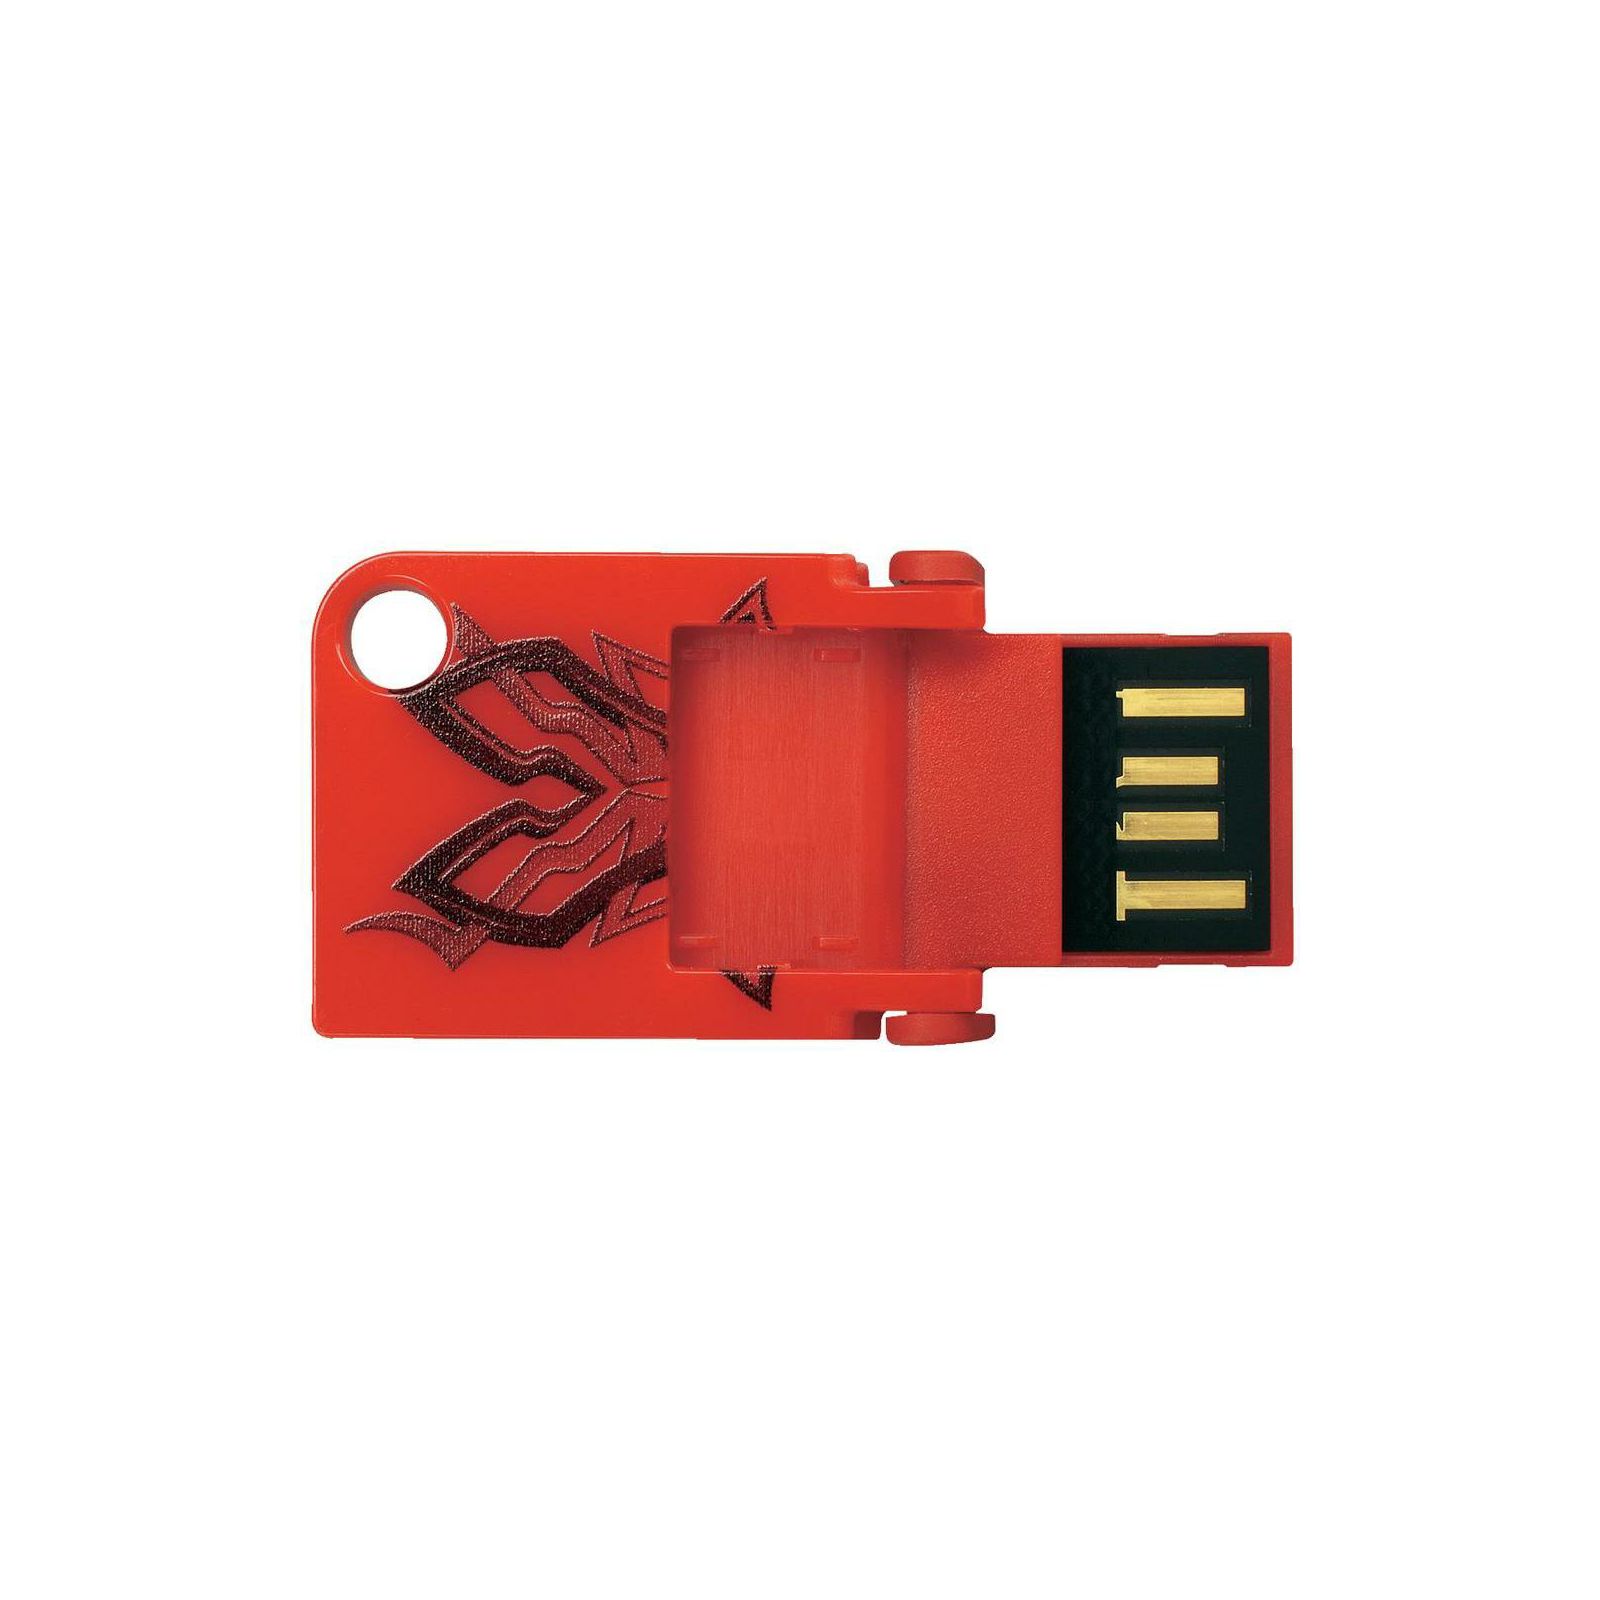 SanDisk Cruzer Pop 4GB Tribal SDCZ53B-004G-B35 USB Memory Stick